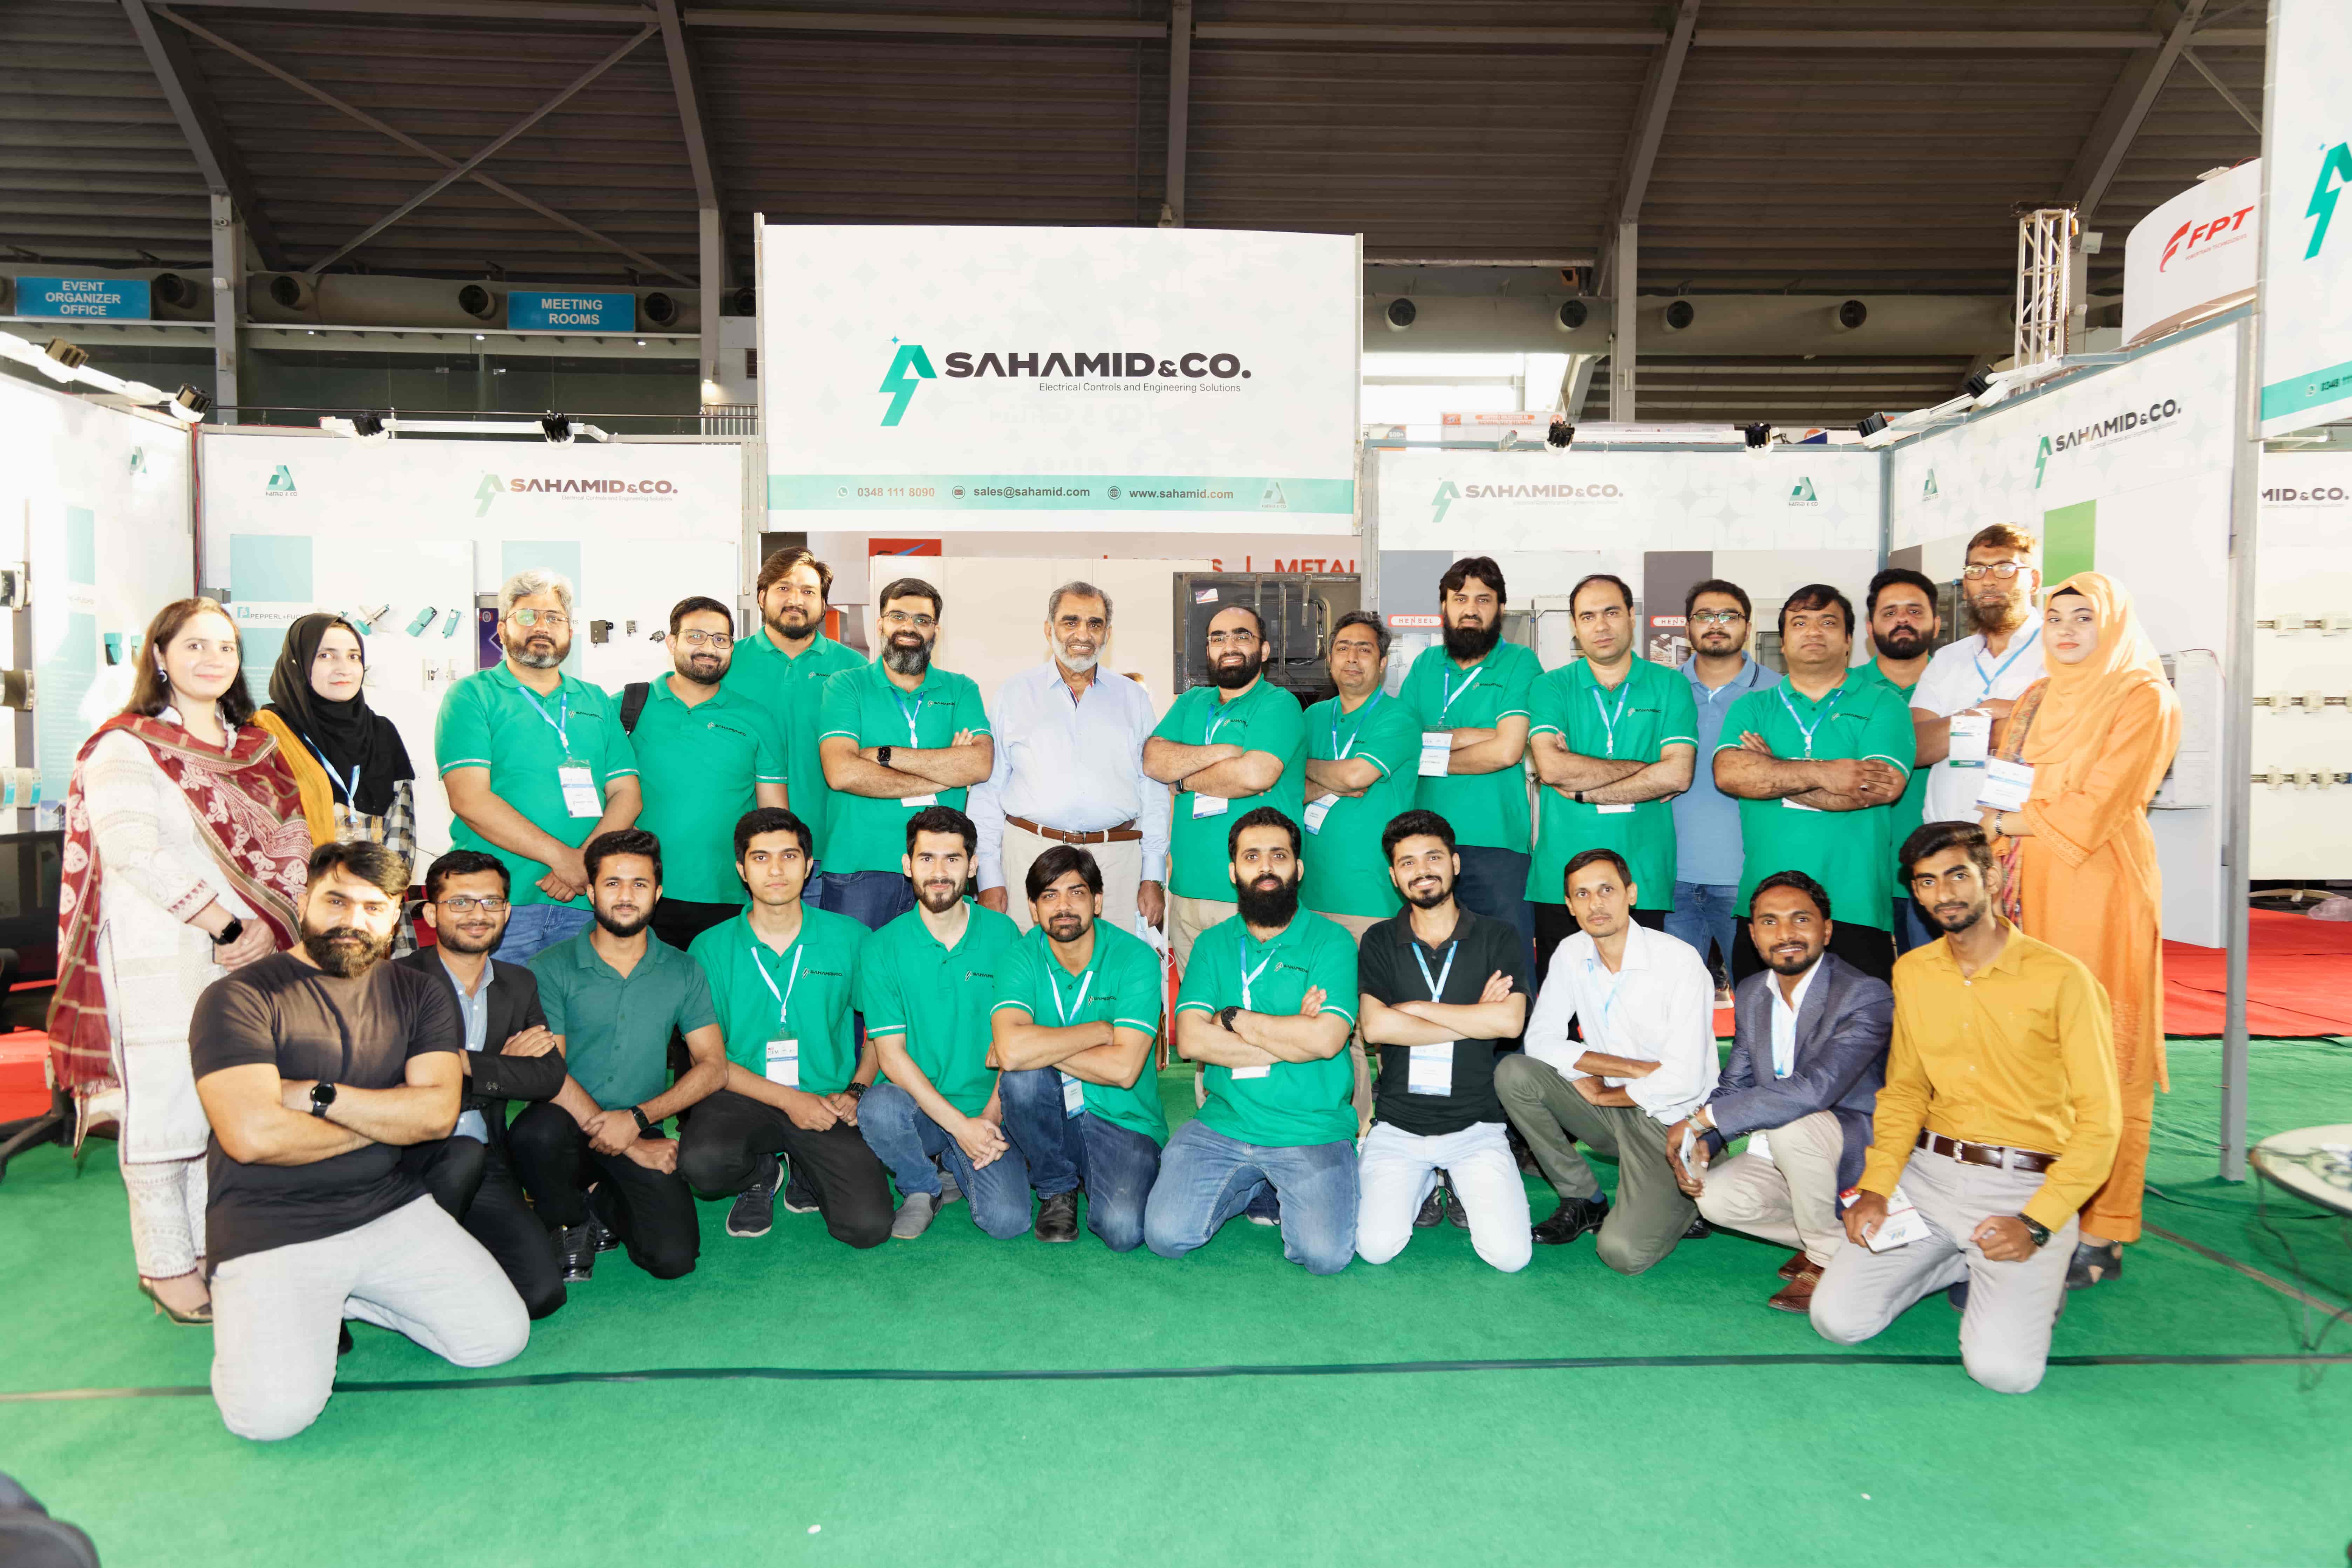 Sahamid Team at IREM Expo